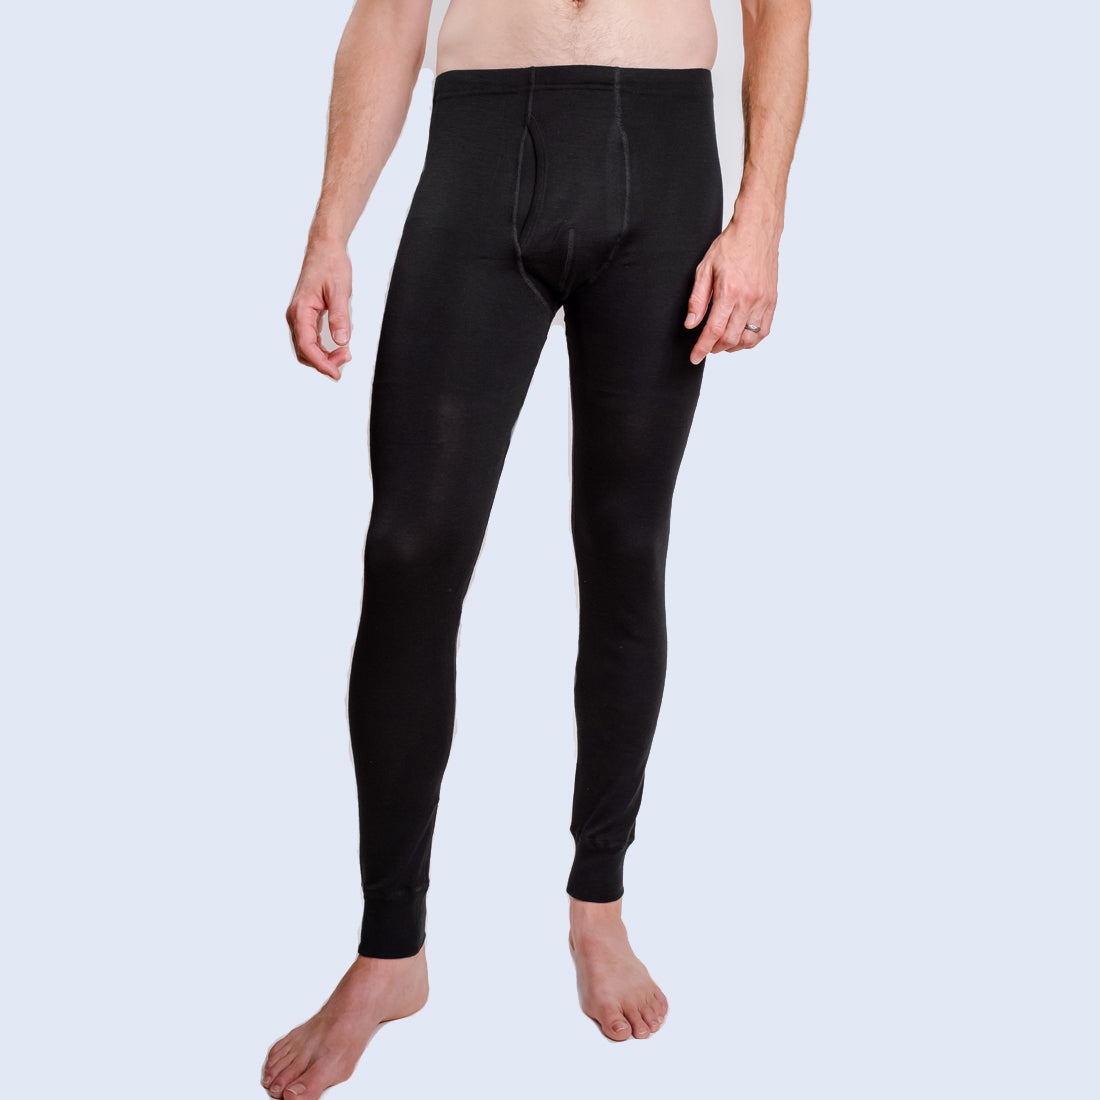 Hocosa Men's Long Underwear Pants in Organic – Danish Woolen Delight